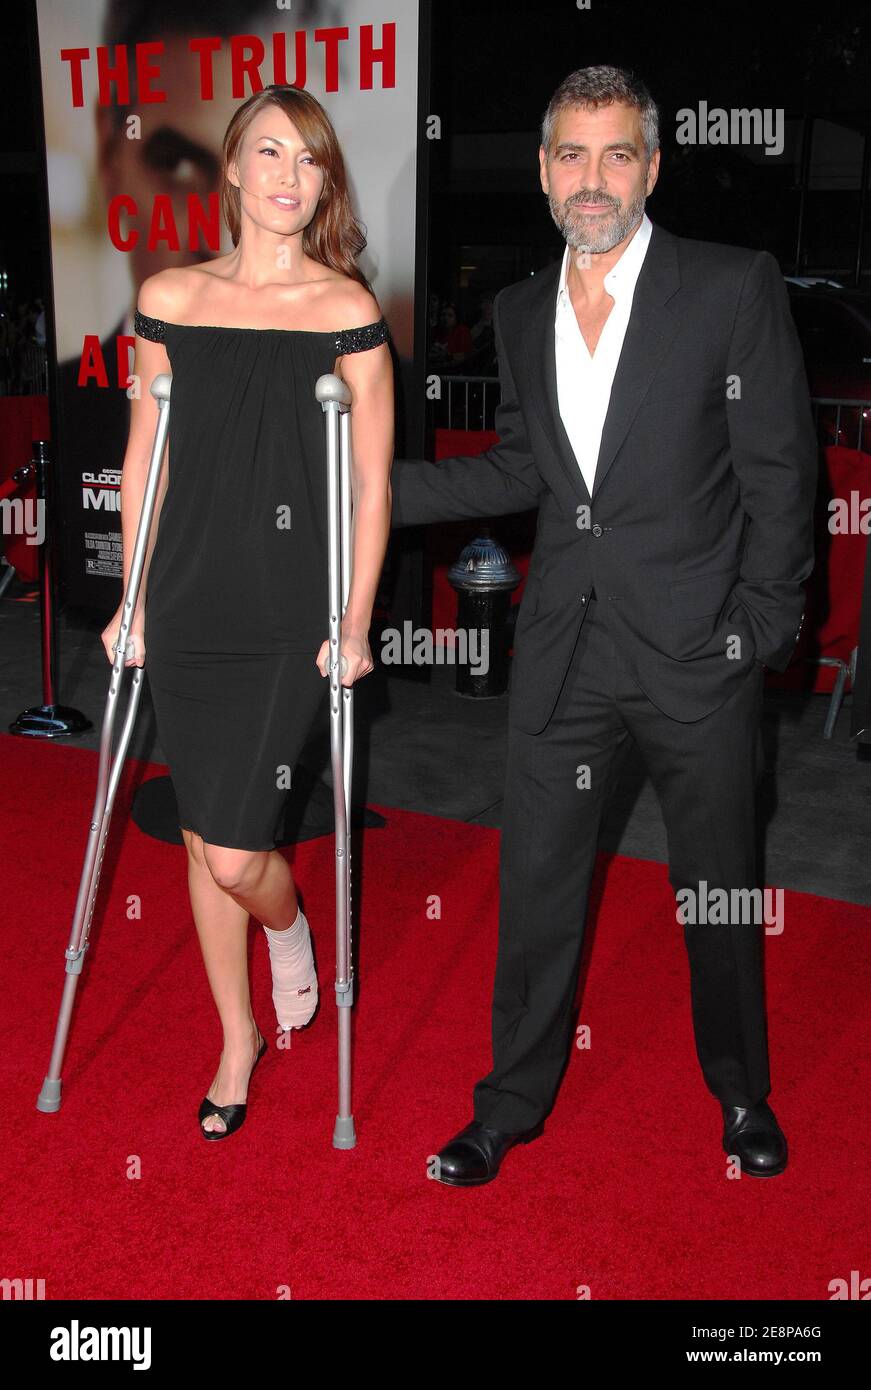 L'acteur George Clooney et sa petite amie Sarah Larson, toutes deux récemment impliquées dans un accident de moto, assistent à la première de « Michael Clayton », qui s'est tenue au théâtre Ziegfeld à New York, NY, États-Unis, le 24 septembre 2007. Photo de Gregorio Binuya/ABACAPRESS.COM Banque D'Images